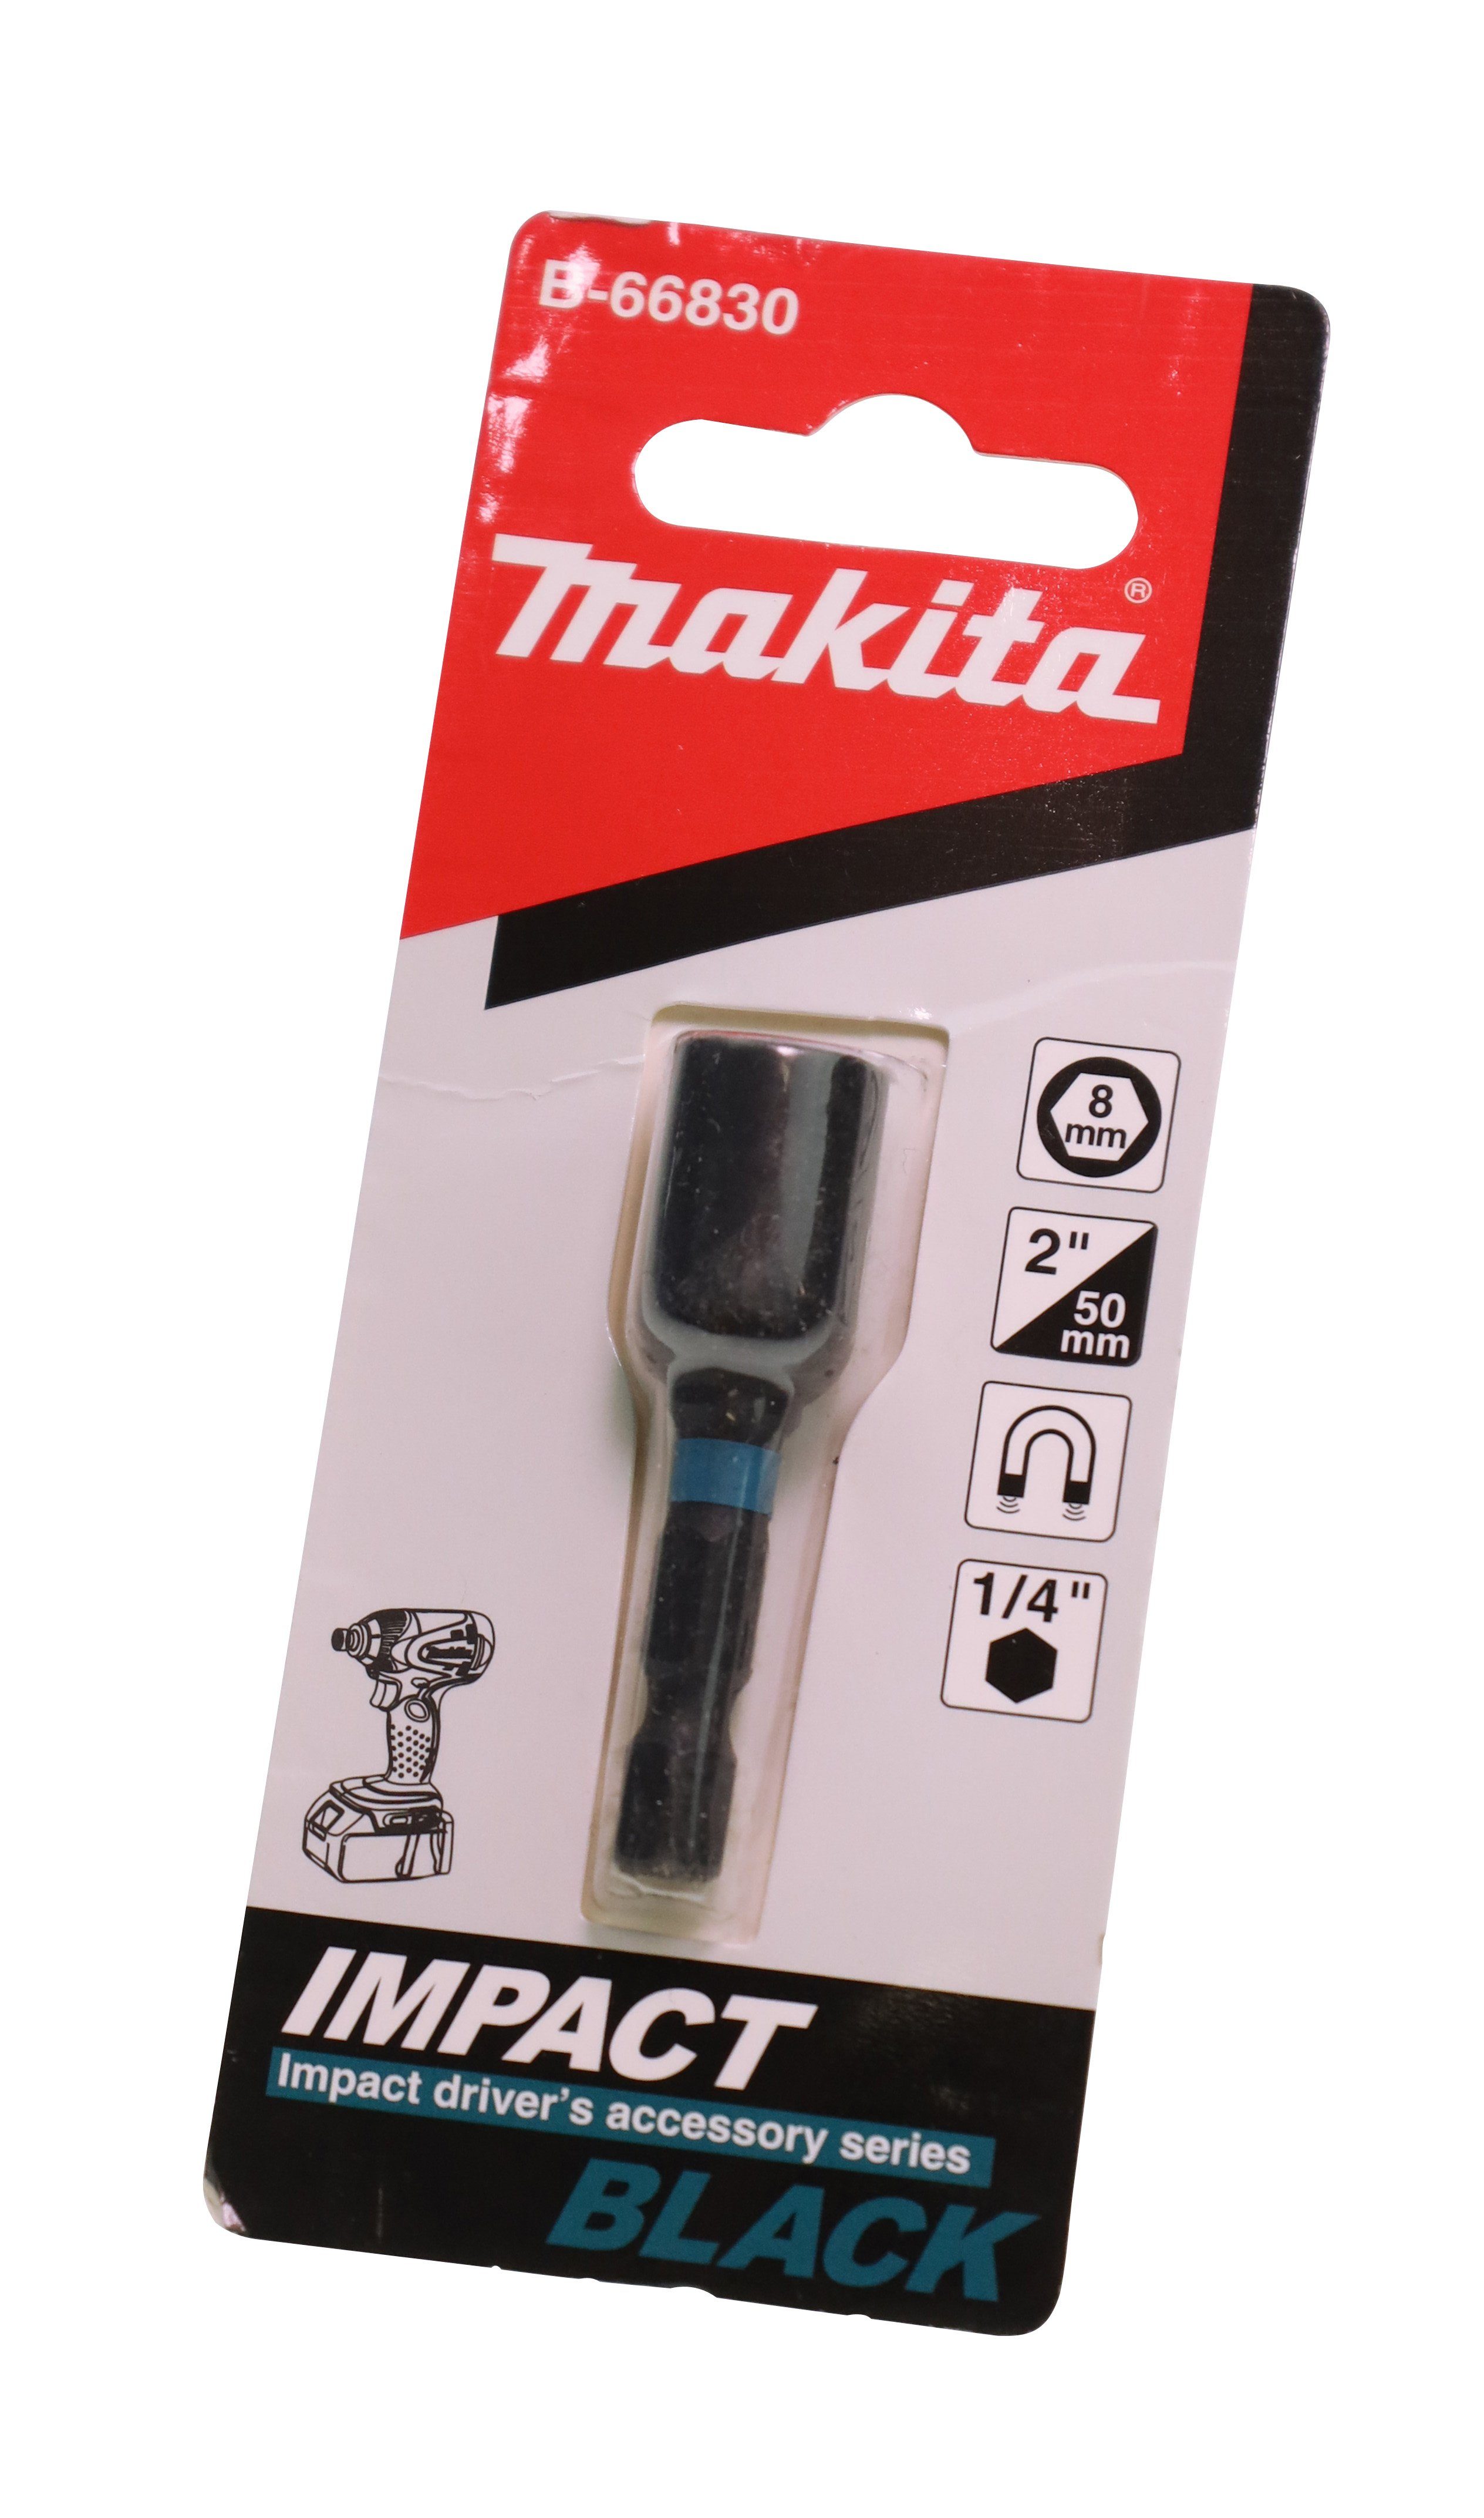 mit 1/4" Makita B-66830 Makita Schla Bohrer- Steckschlüssel SW8 Sechskantaufnahme und für Bit-Set